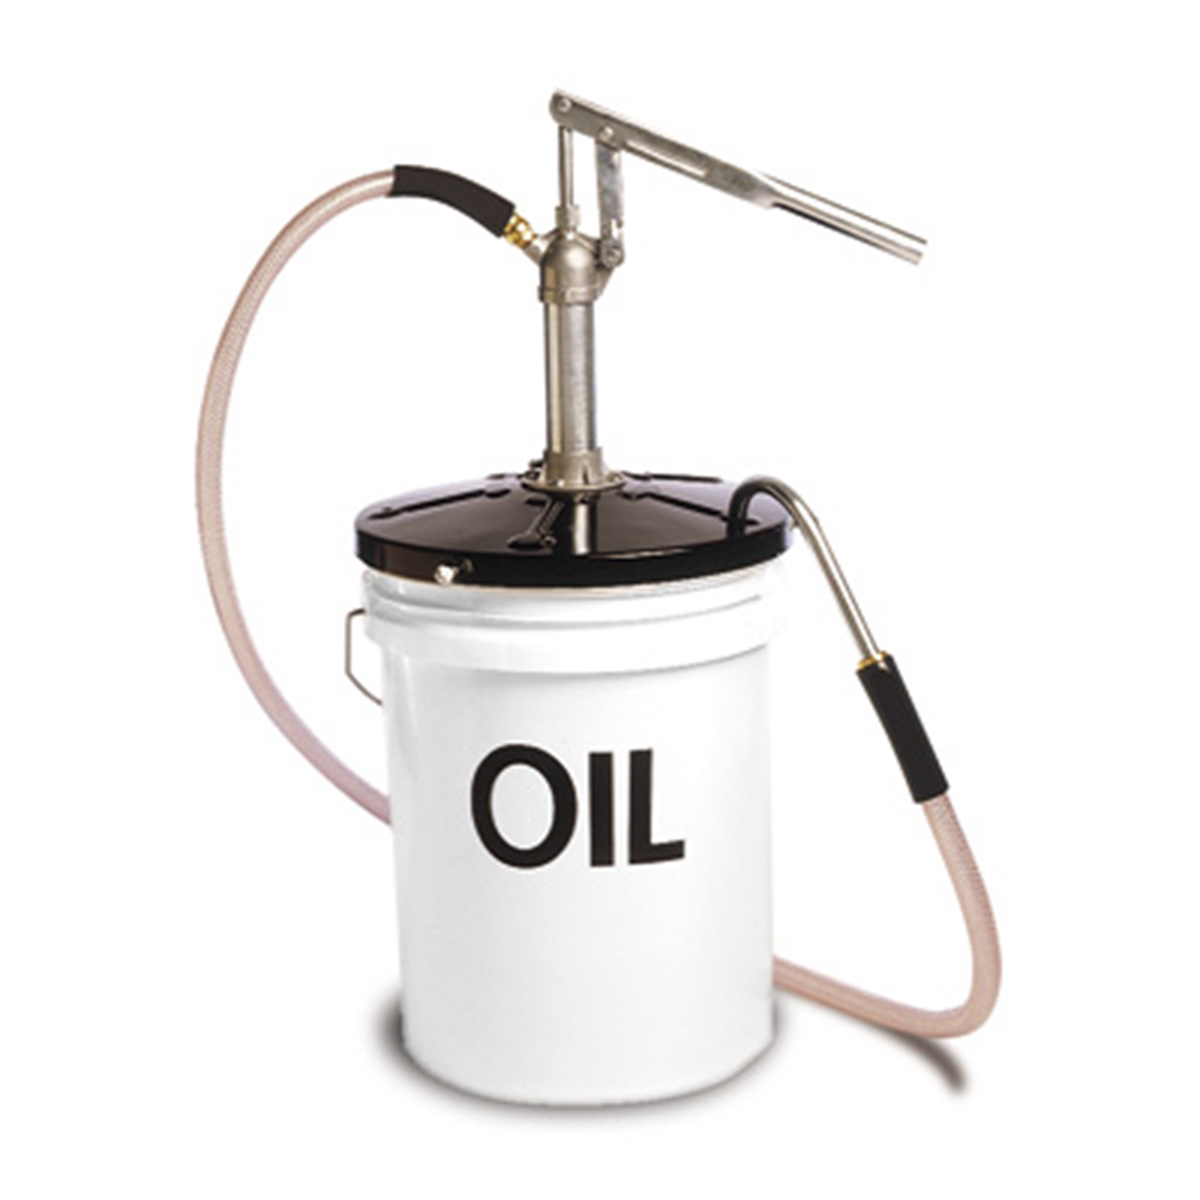 Oil transfer pump - JB Industries